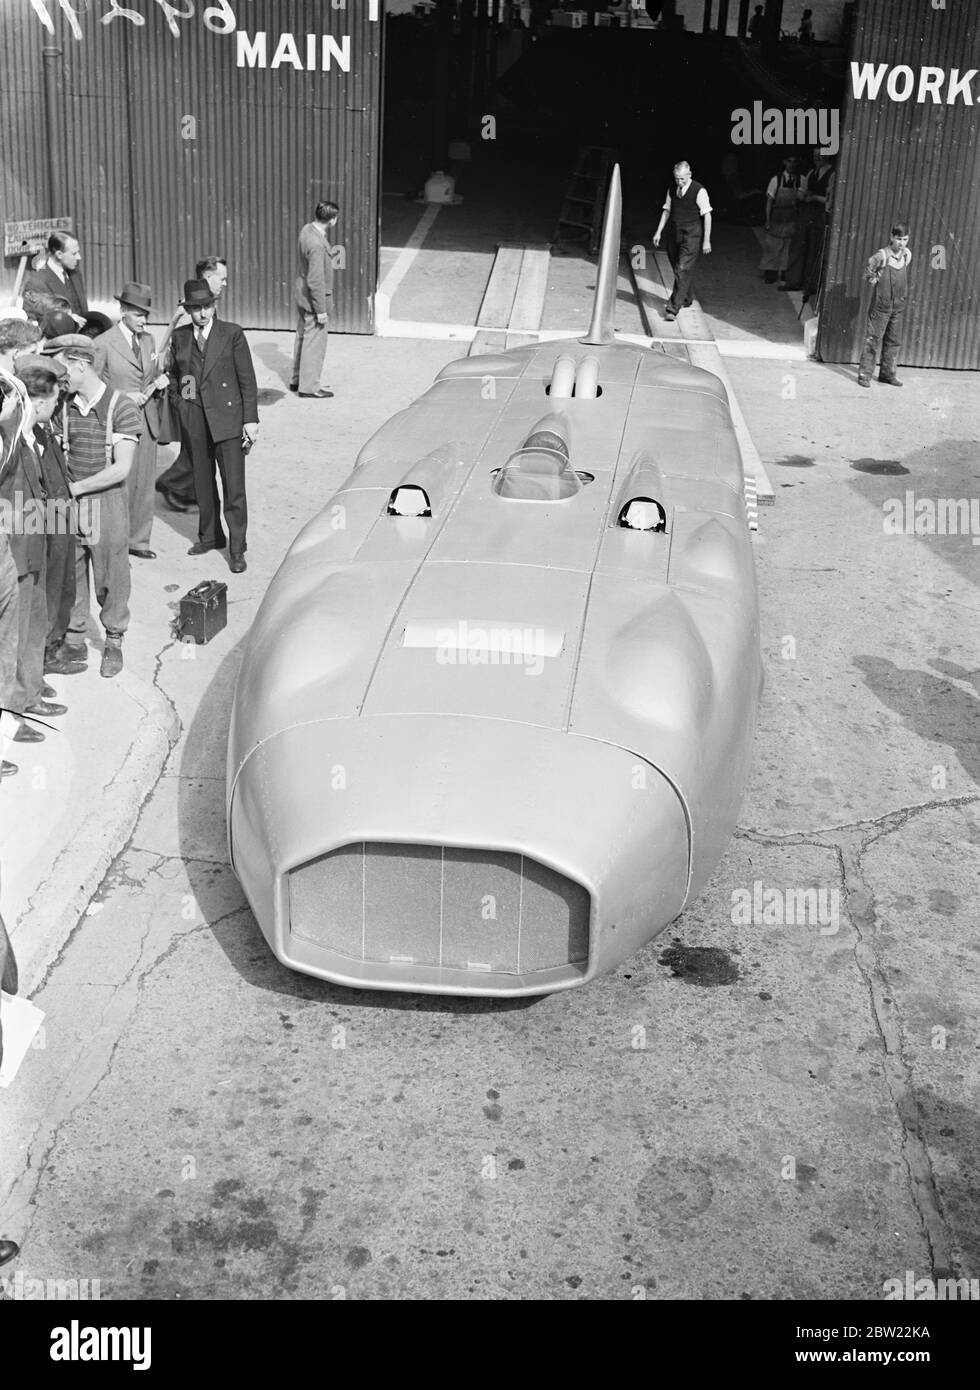 Le mamoth car de l'Eatriceuse du capitaine C.E.T Eyaton est maintenant en vue à Chiswick Londres. Arrivé des travaux de Tipton pour être emballé l'expédition pour l'Amérique. La voiture sera utilisée pour sa tentative sur le record de vitesse terrestre mondial sur l'Utah, où il espère atteindre une vitesse de 400 miles par heure. La voiture est équipée de deux moteurs zéro développant 3250 ch et d'une direction à quatre roues avec huit roues. 13 septembre 1937. Banque D'Images